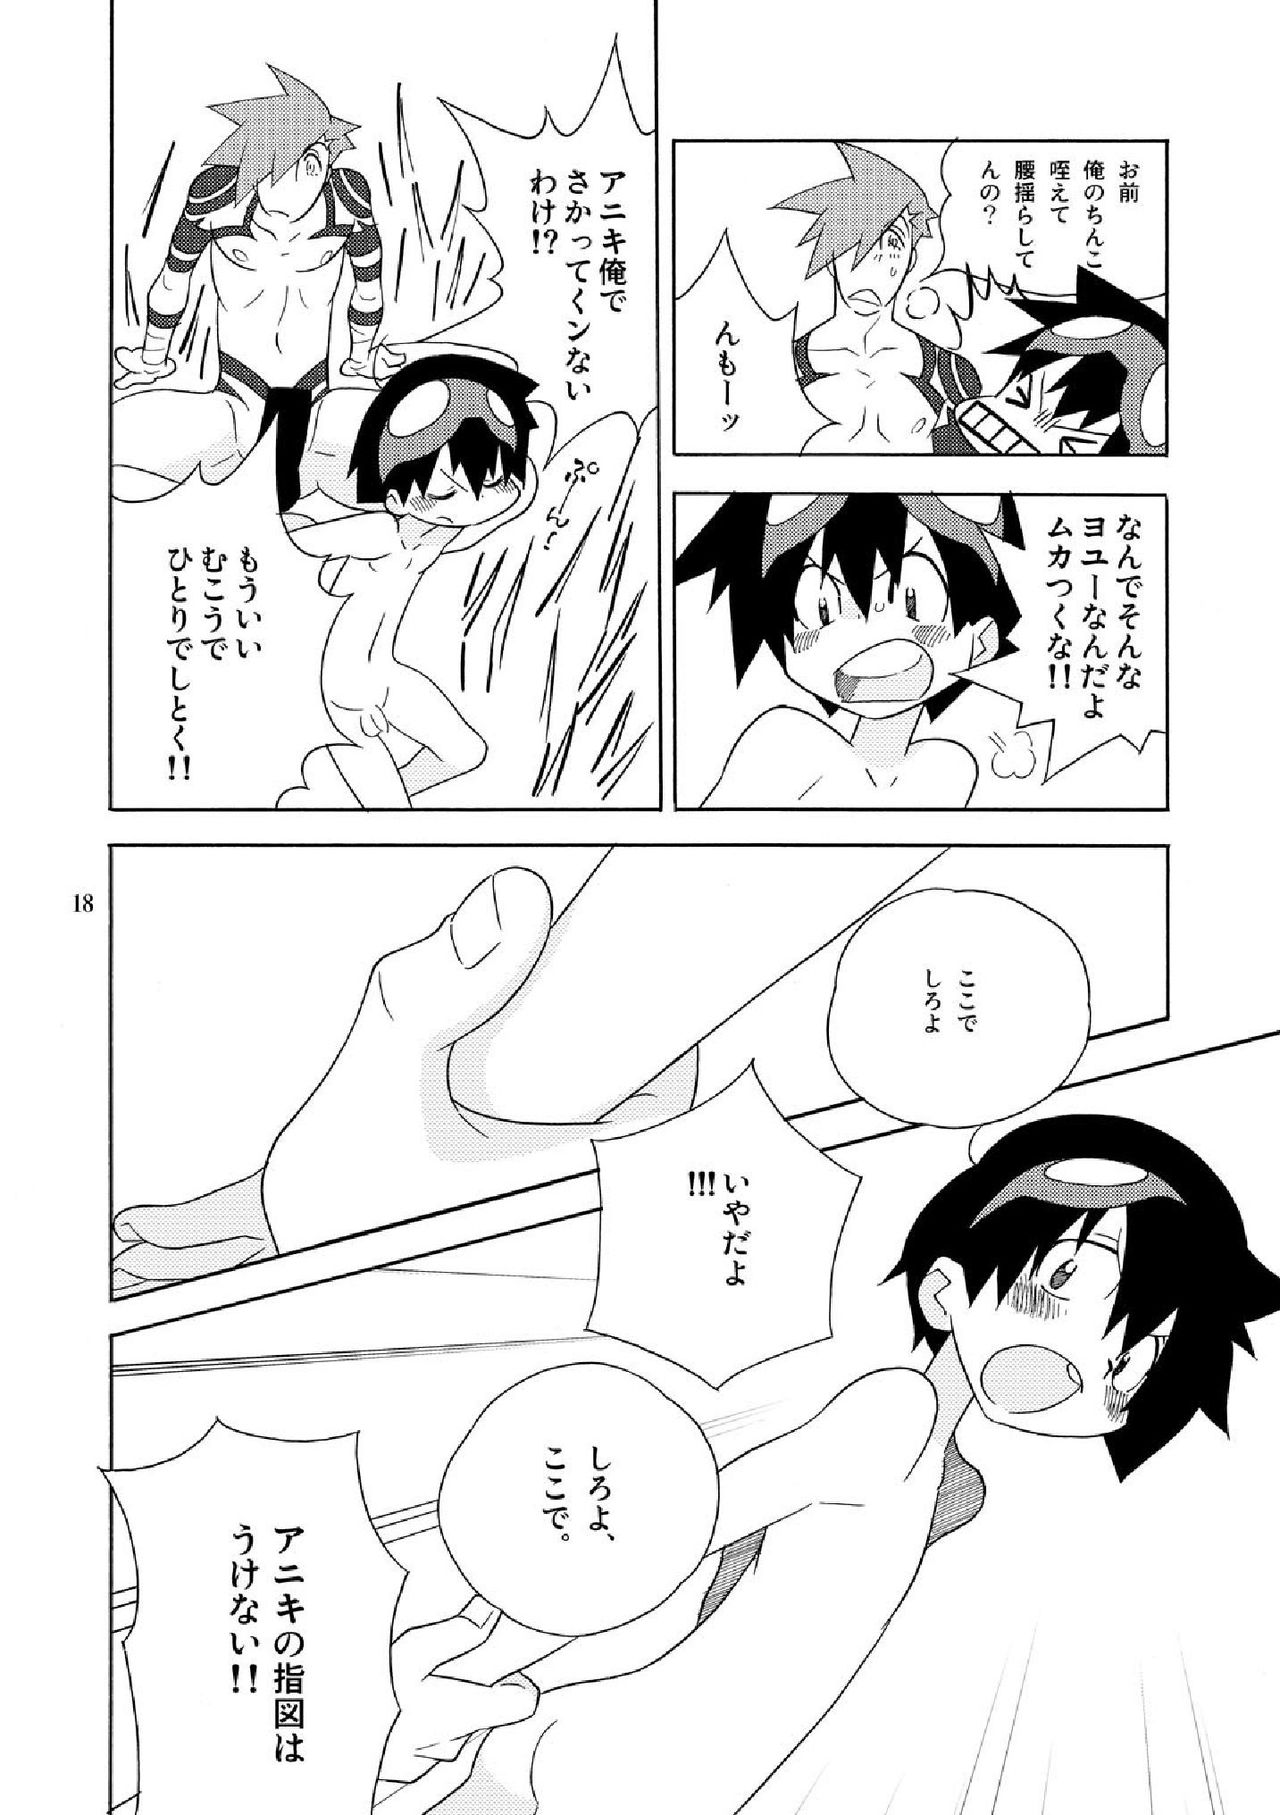 [musuBi (Shiomusubi)] Sweet morning (Tengen Toppa Gurren Lagann) page 18 full